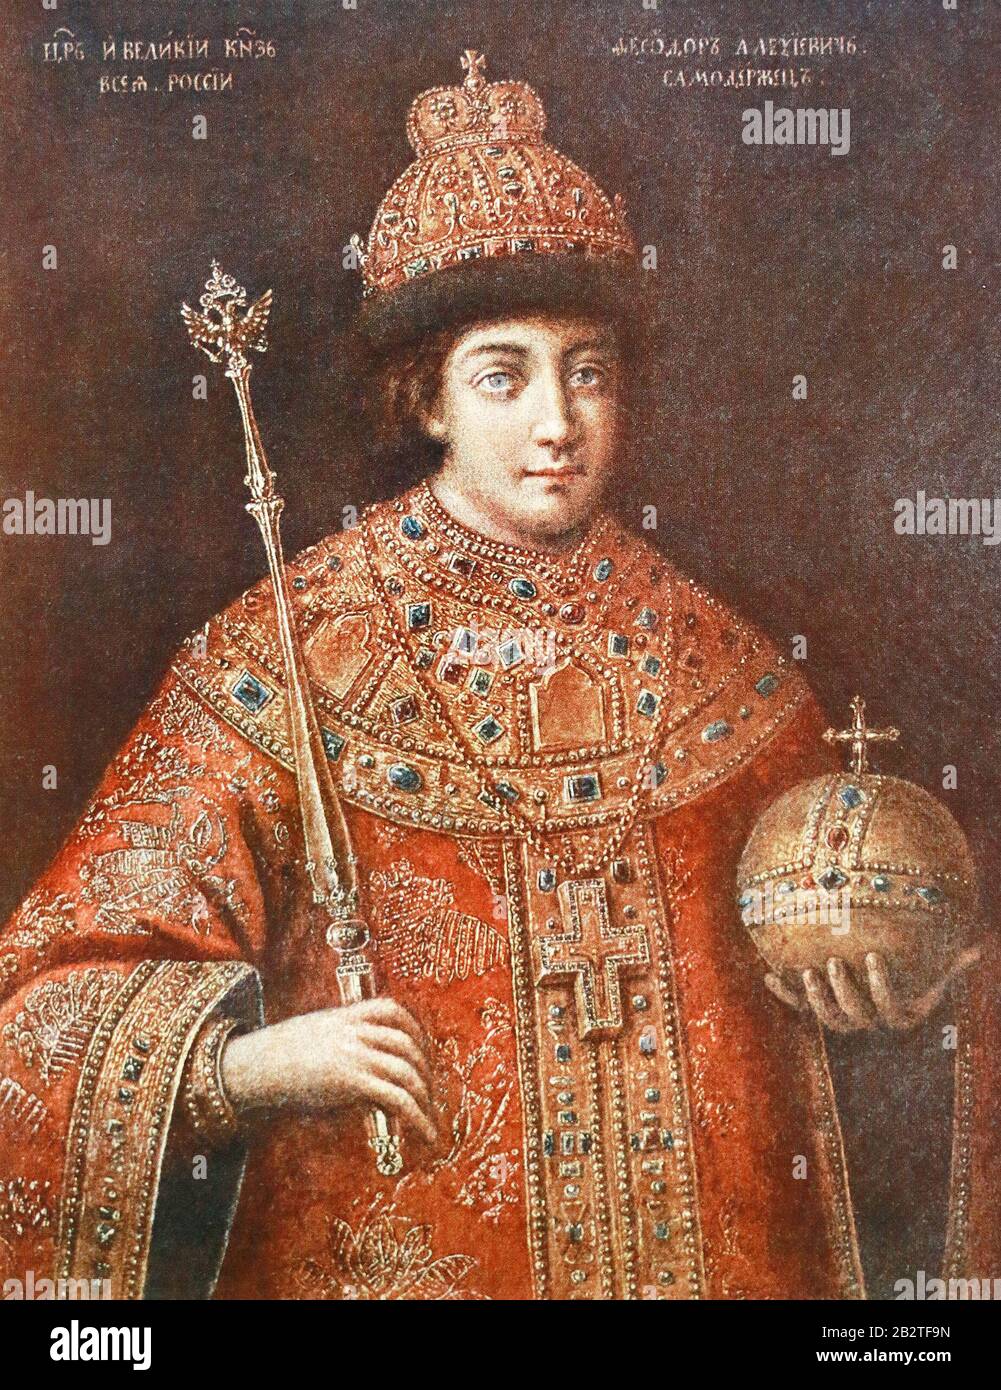 Russe Tsar Alexei Mikhaïlovitch dans le chapeau de couronnement avec orbe et sceptre. Peinture du XVIIe siècle. Banque D'Images